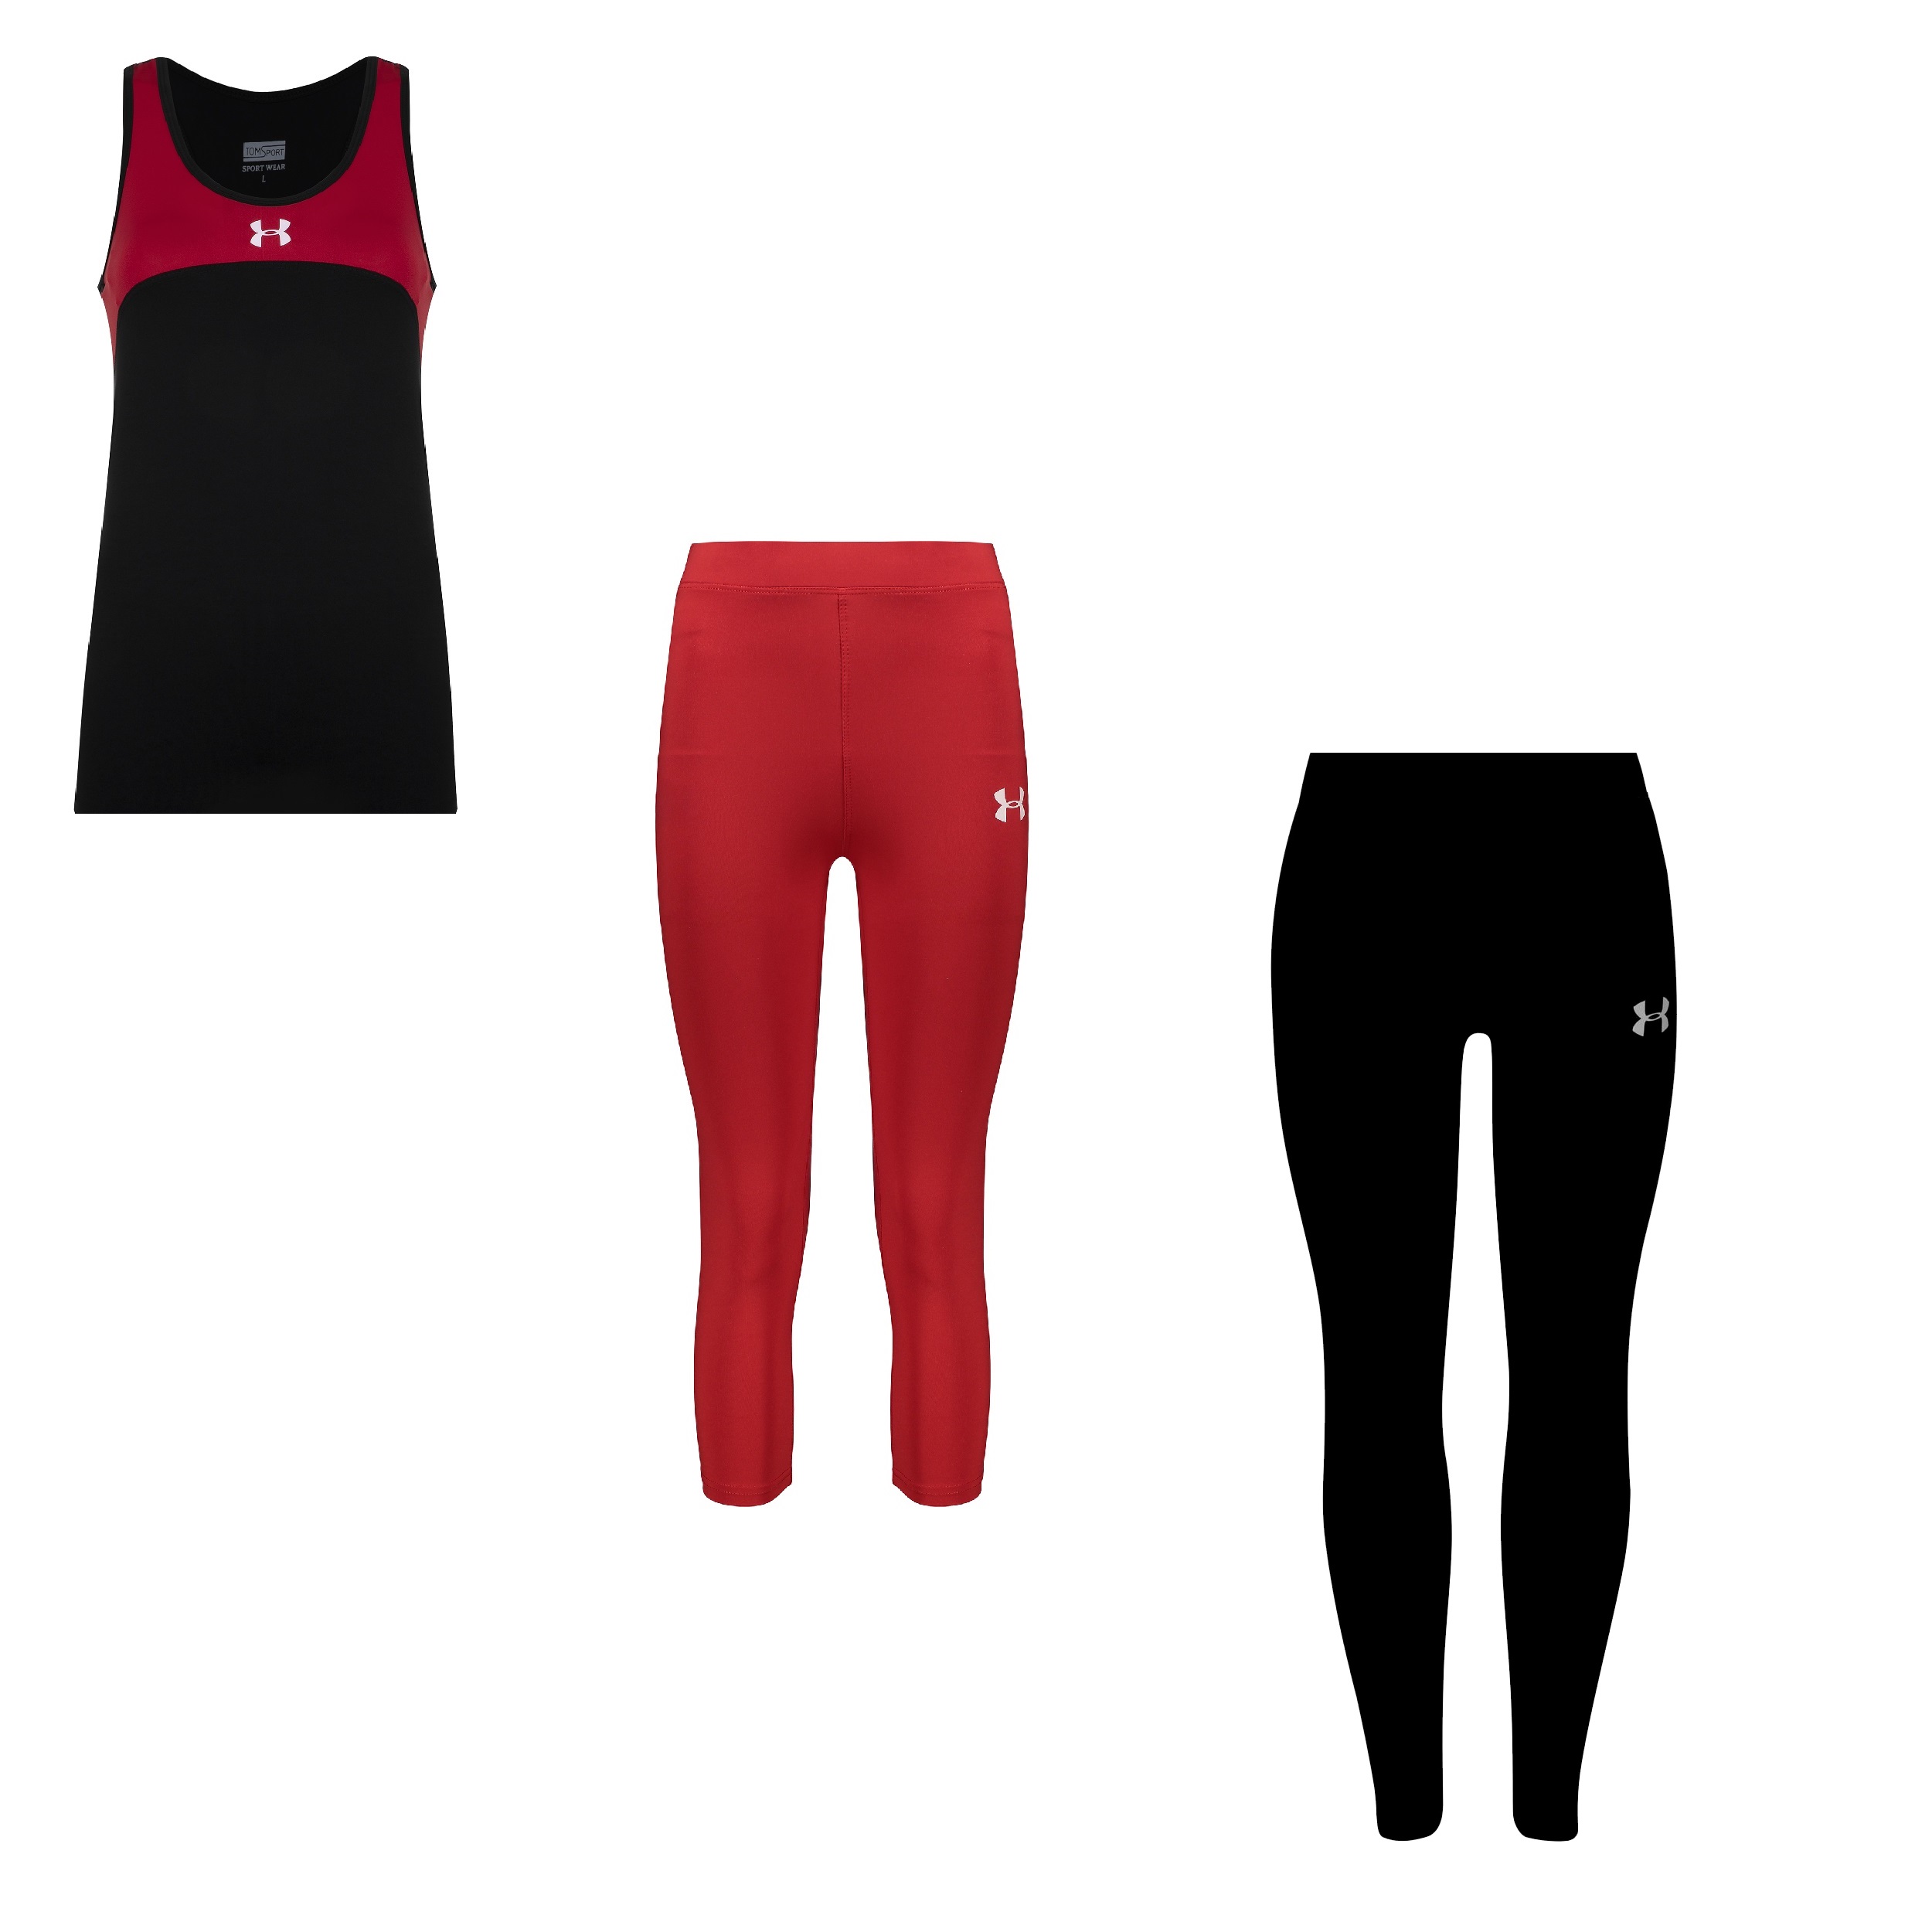 ست 3 تکه لباس ورزشی زنانه مدل R3101-4101-3601